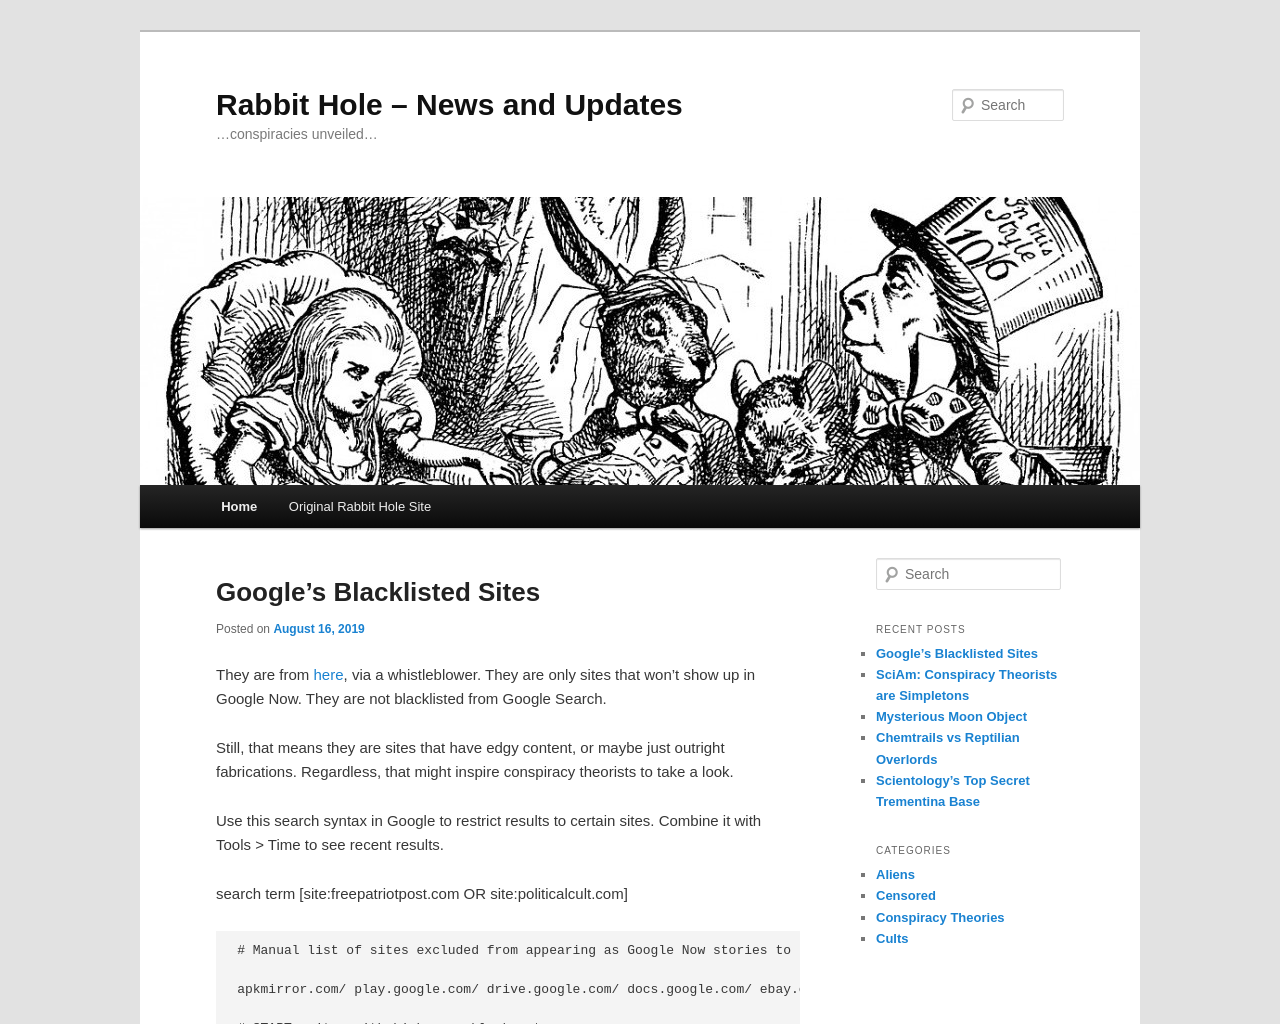 rabbithole2.com